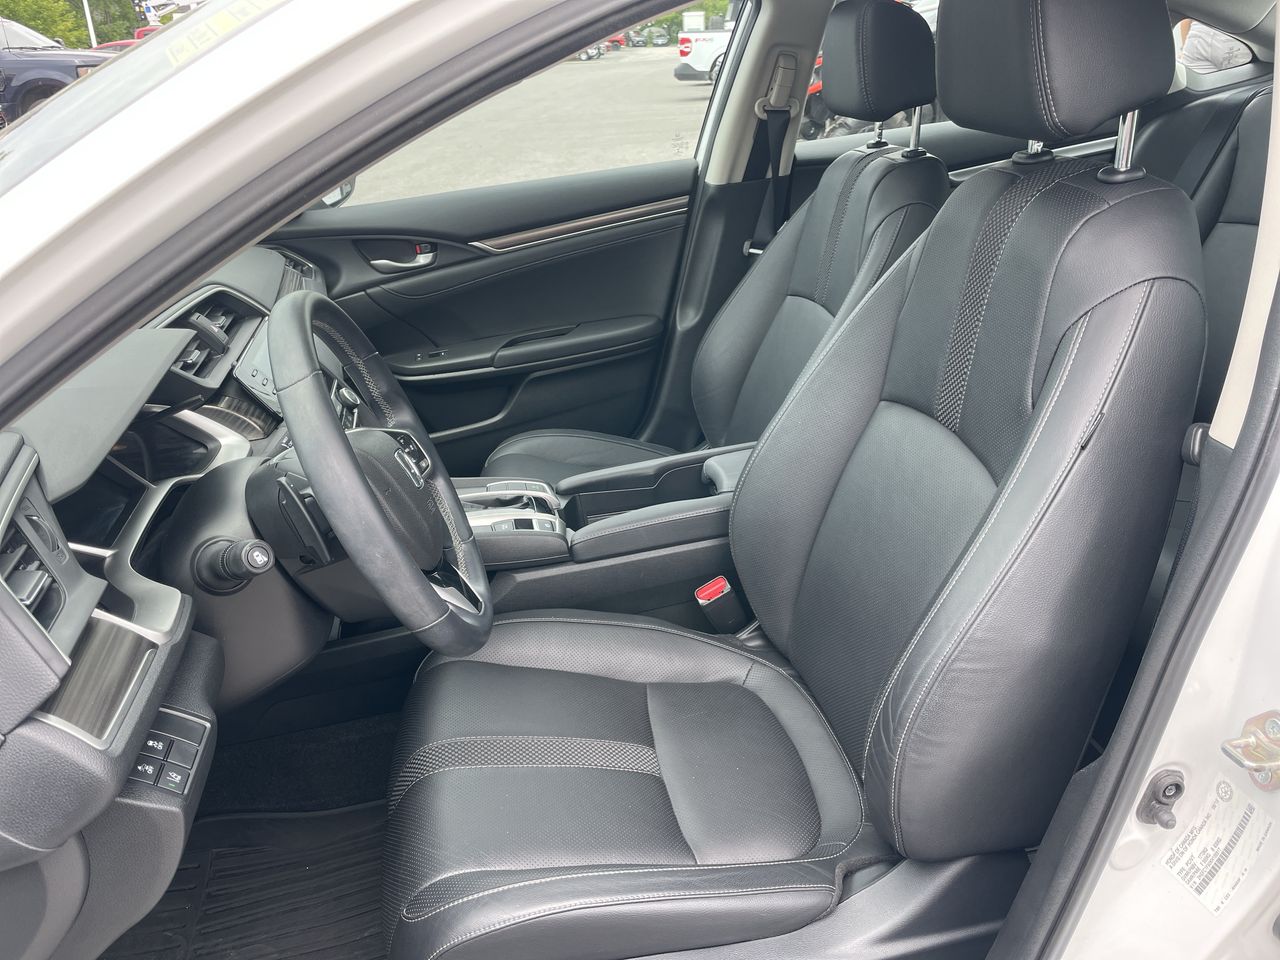 2019 Honda Civic Sedan - P21099 Full Image 11